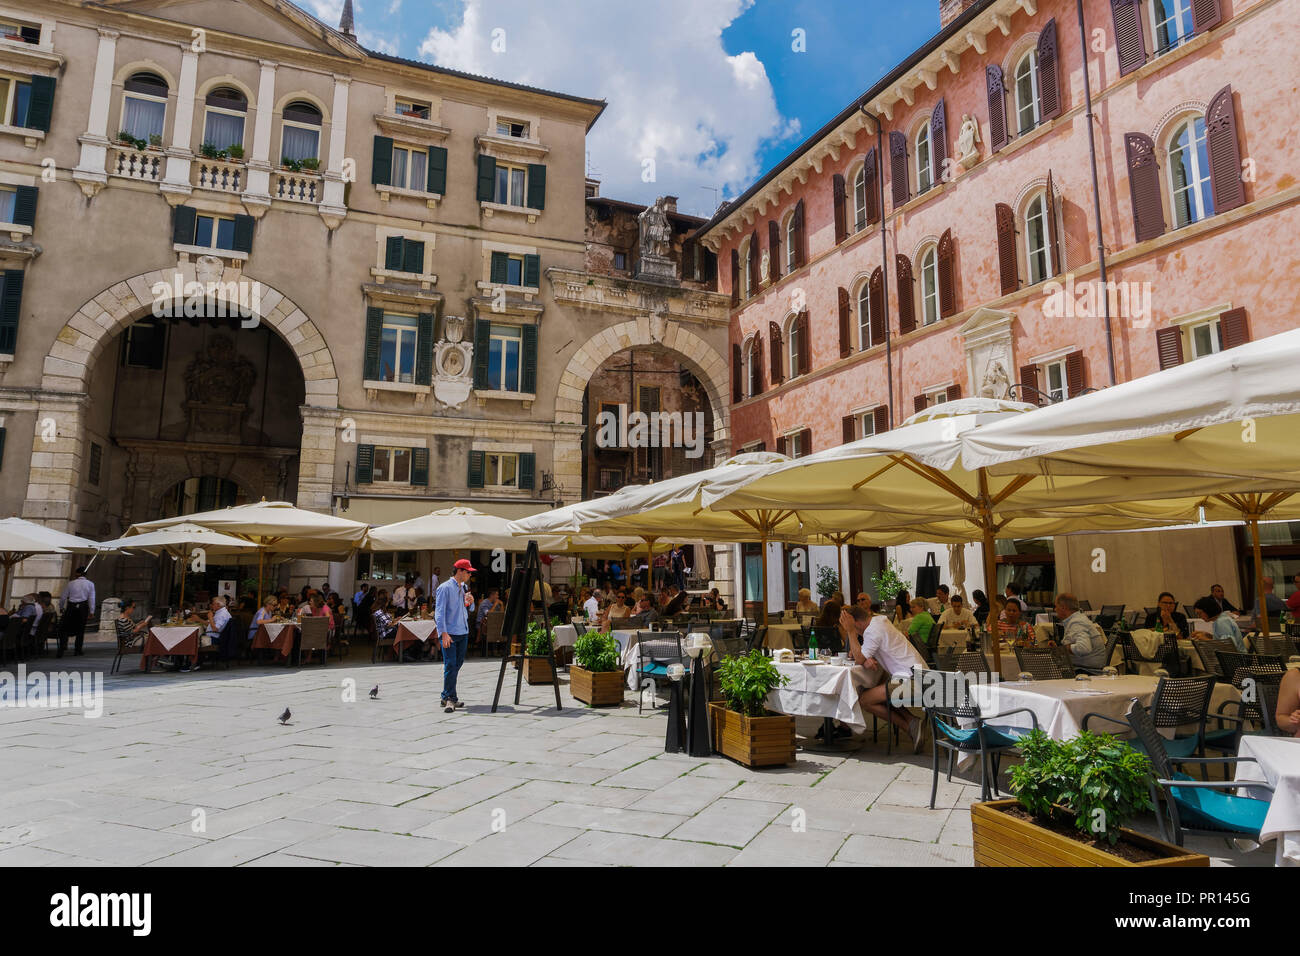 Piazza dei Signori, with crowd eating at restaurants in front of Palazzo Domus Nova on left and Casa della Pieta on right, Verona, Veneto, Italy Stock Photo